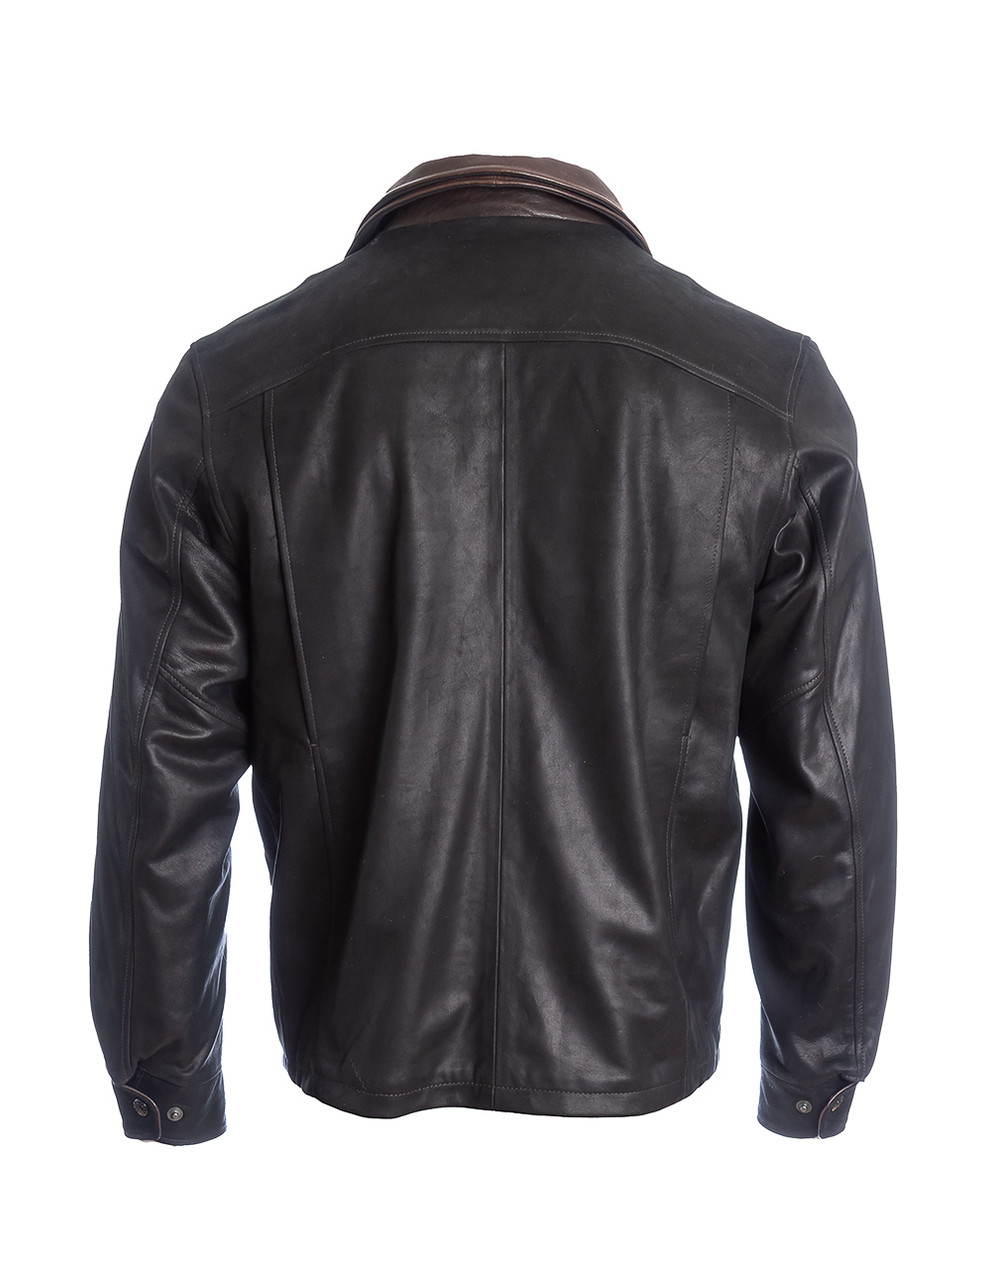 Lone Pine Showman Leather Jacket | Avalon Clothing